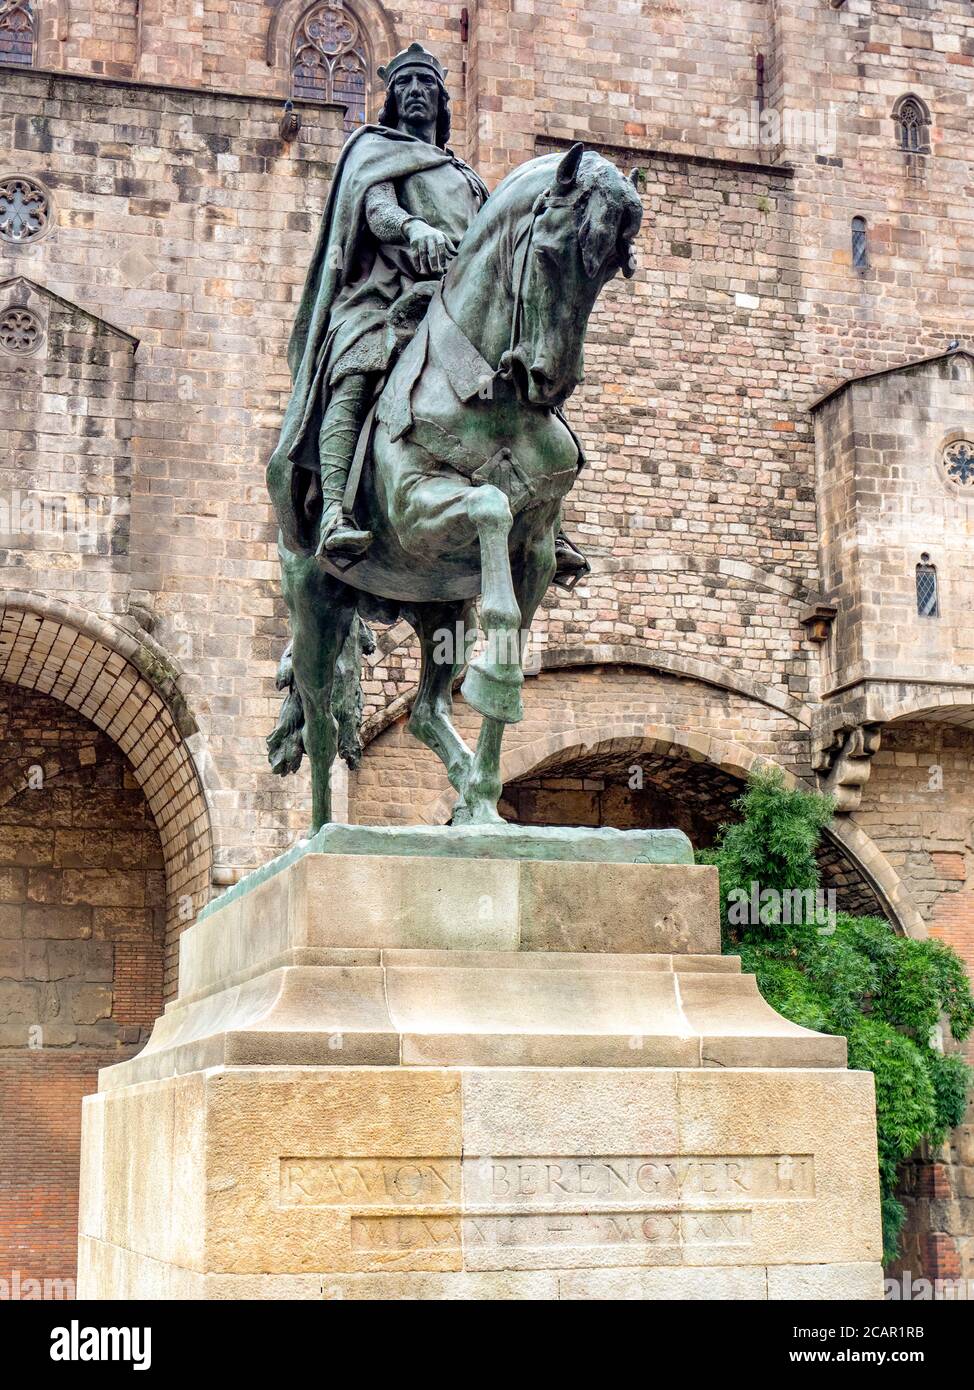 4 Mars 2020: Barcelone, Espagne - statue équestre de Ramon Berenguer III, comte de Barcelone, sur via Laietana, Barcelone, par Josep Llimona. Banque D'Images